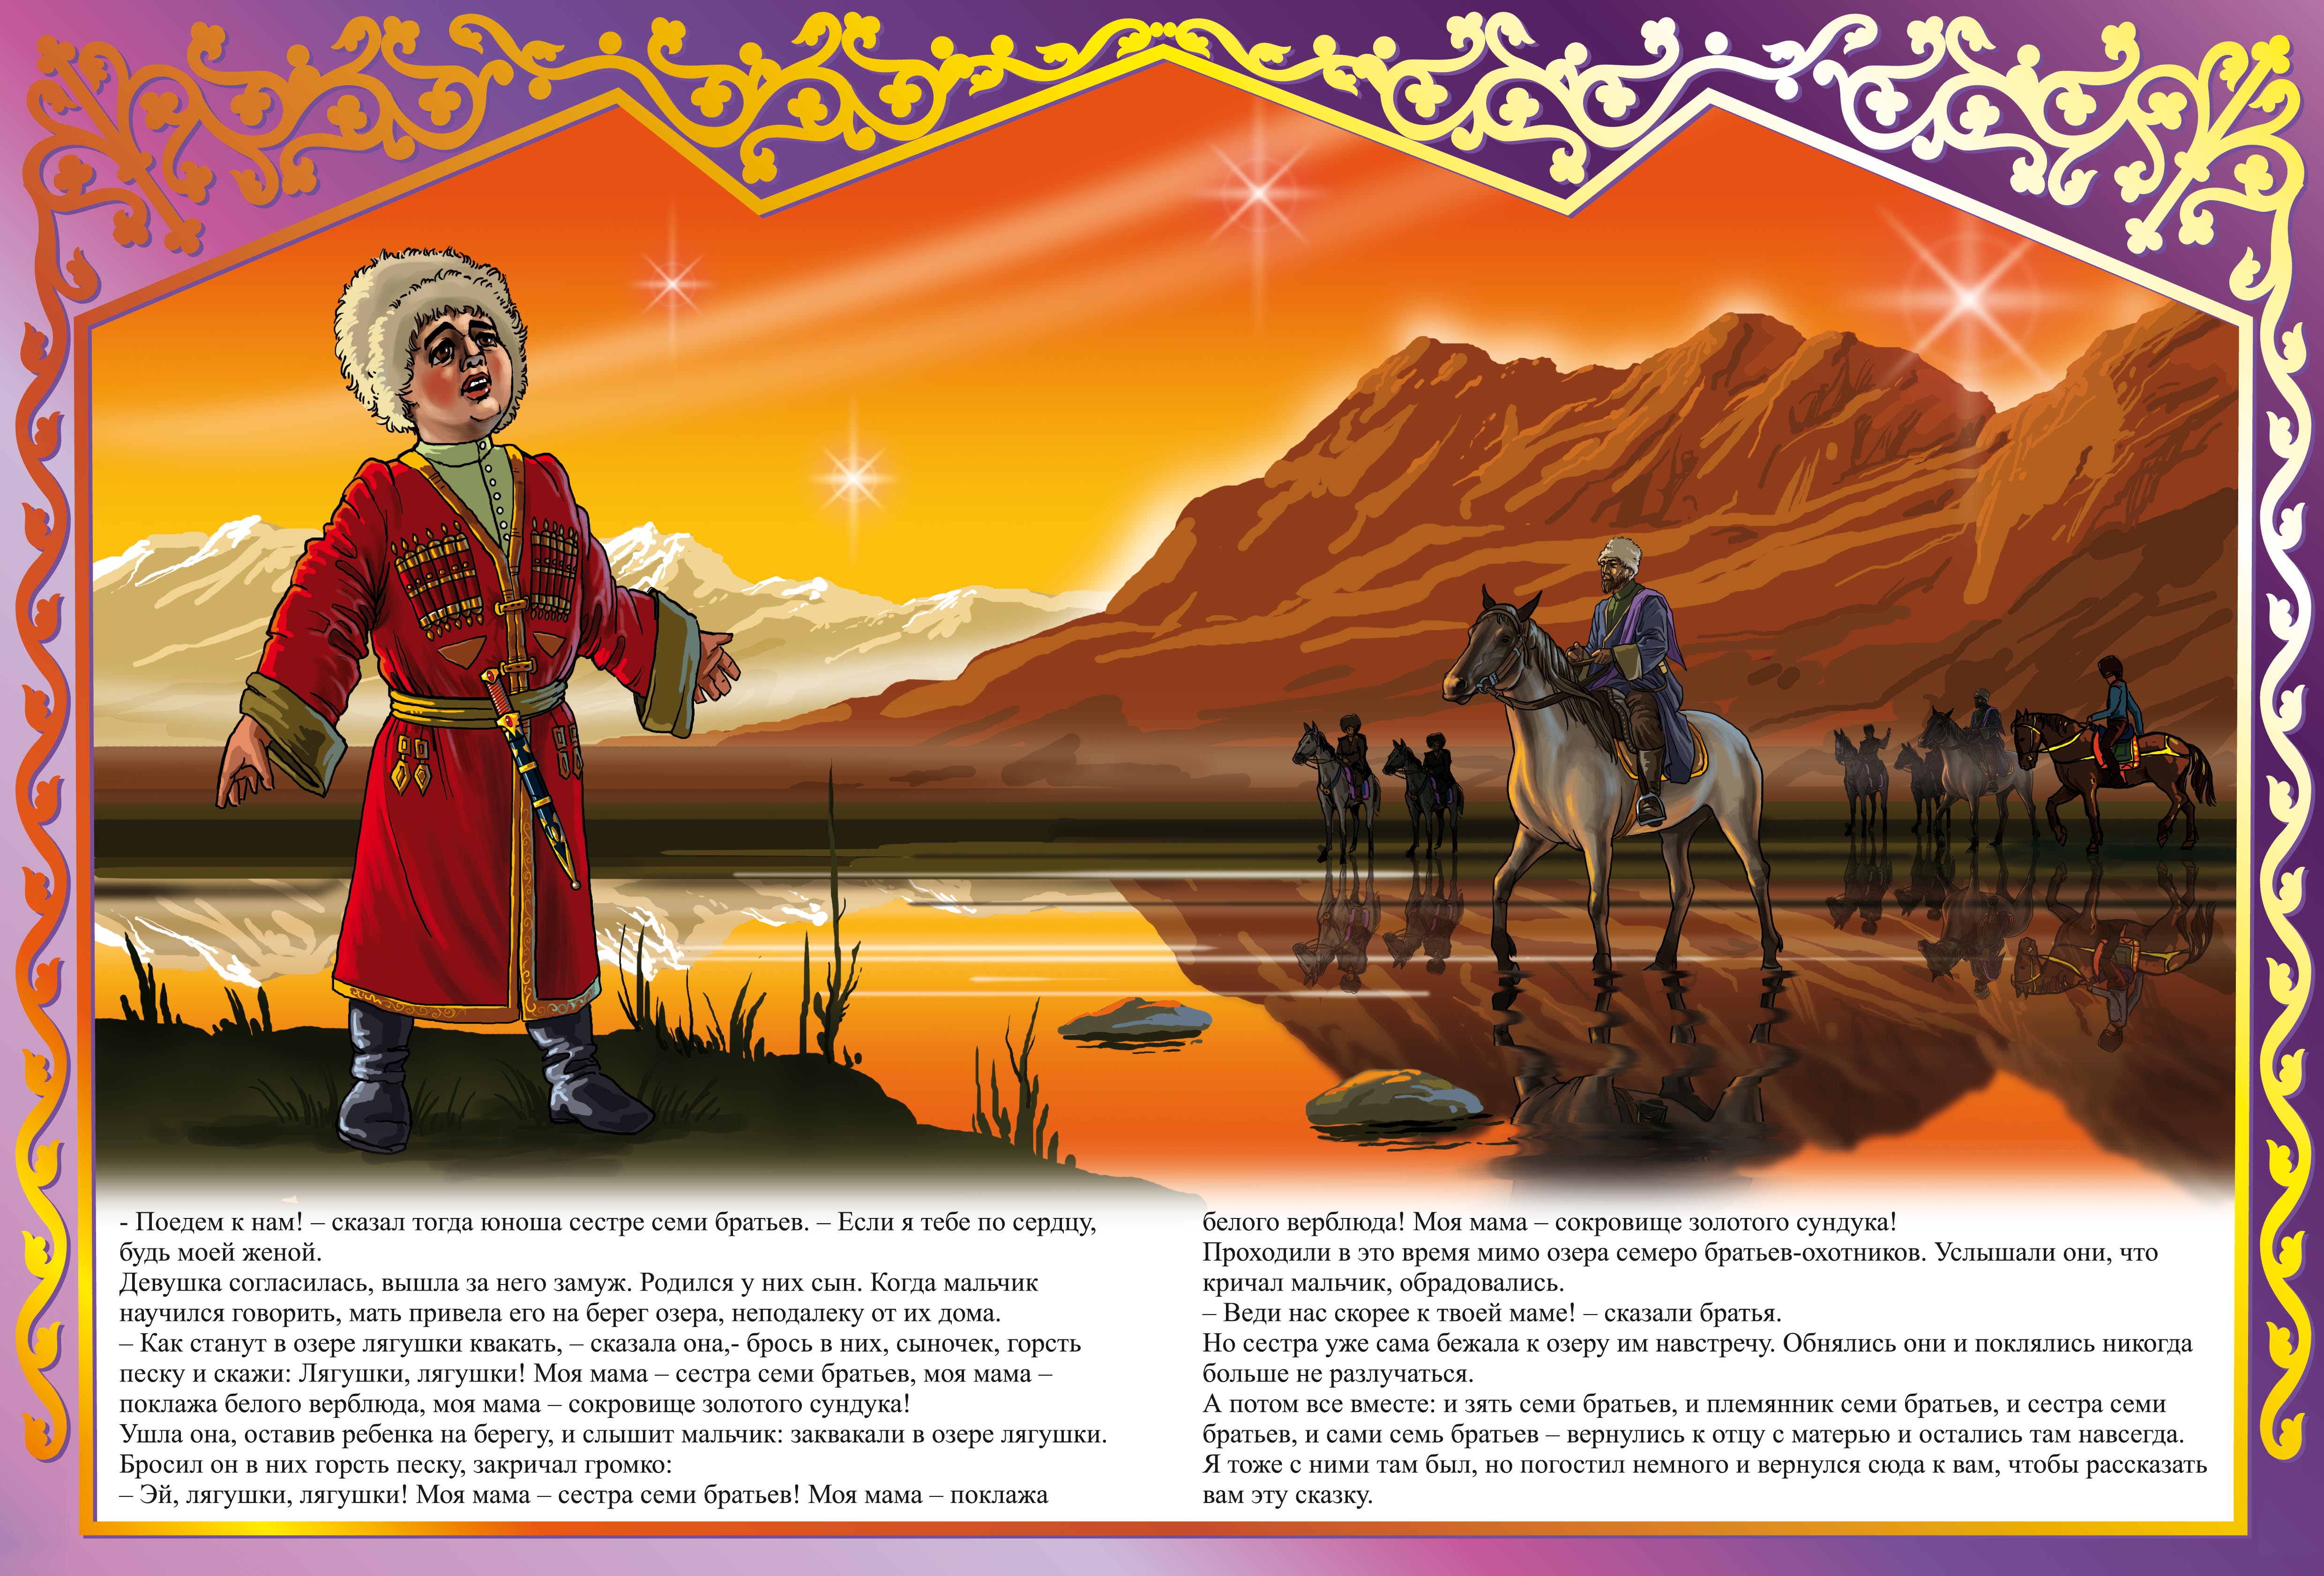 Иллюстрации к кавказским сказкам